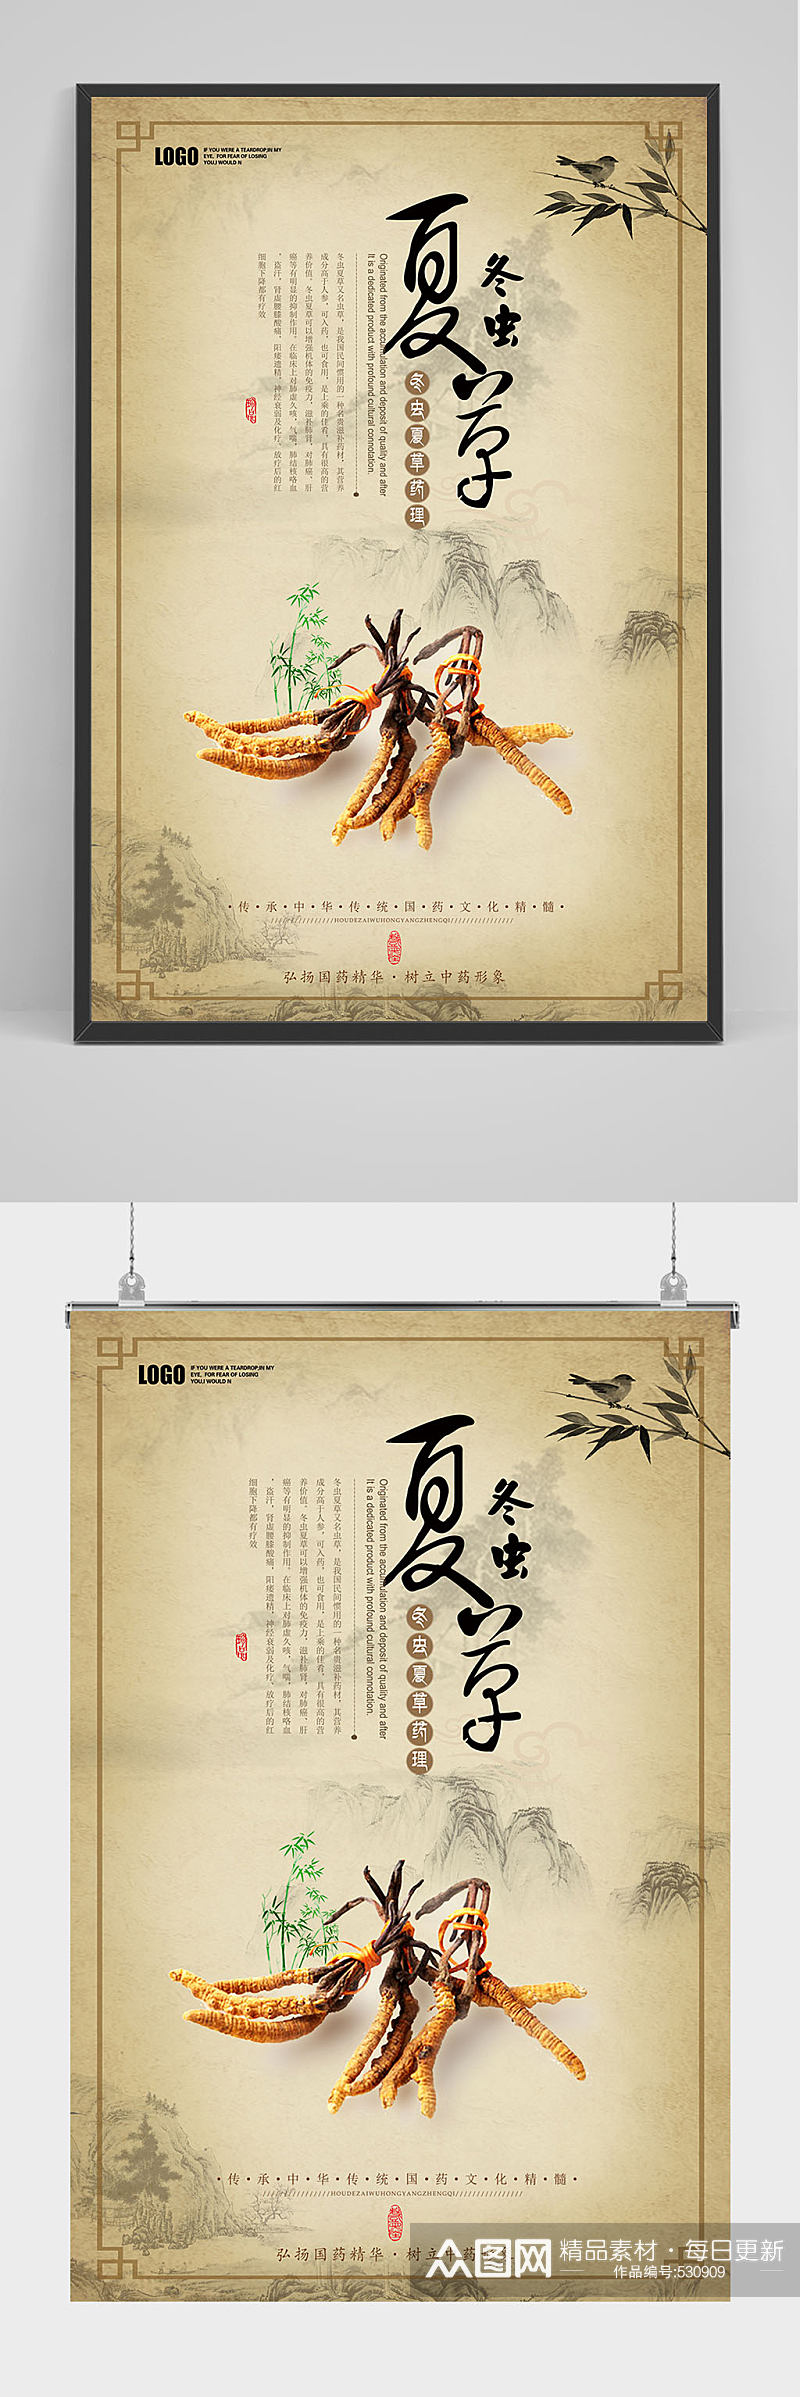 怀旧中国风冬虫夏草海报设计素材